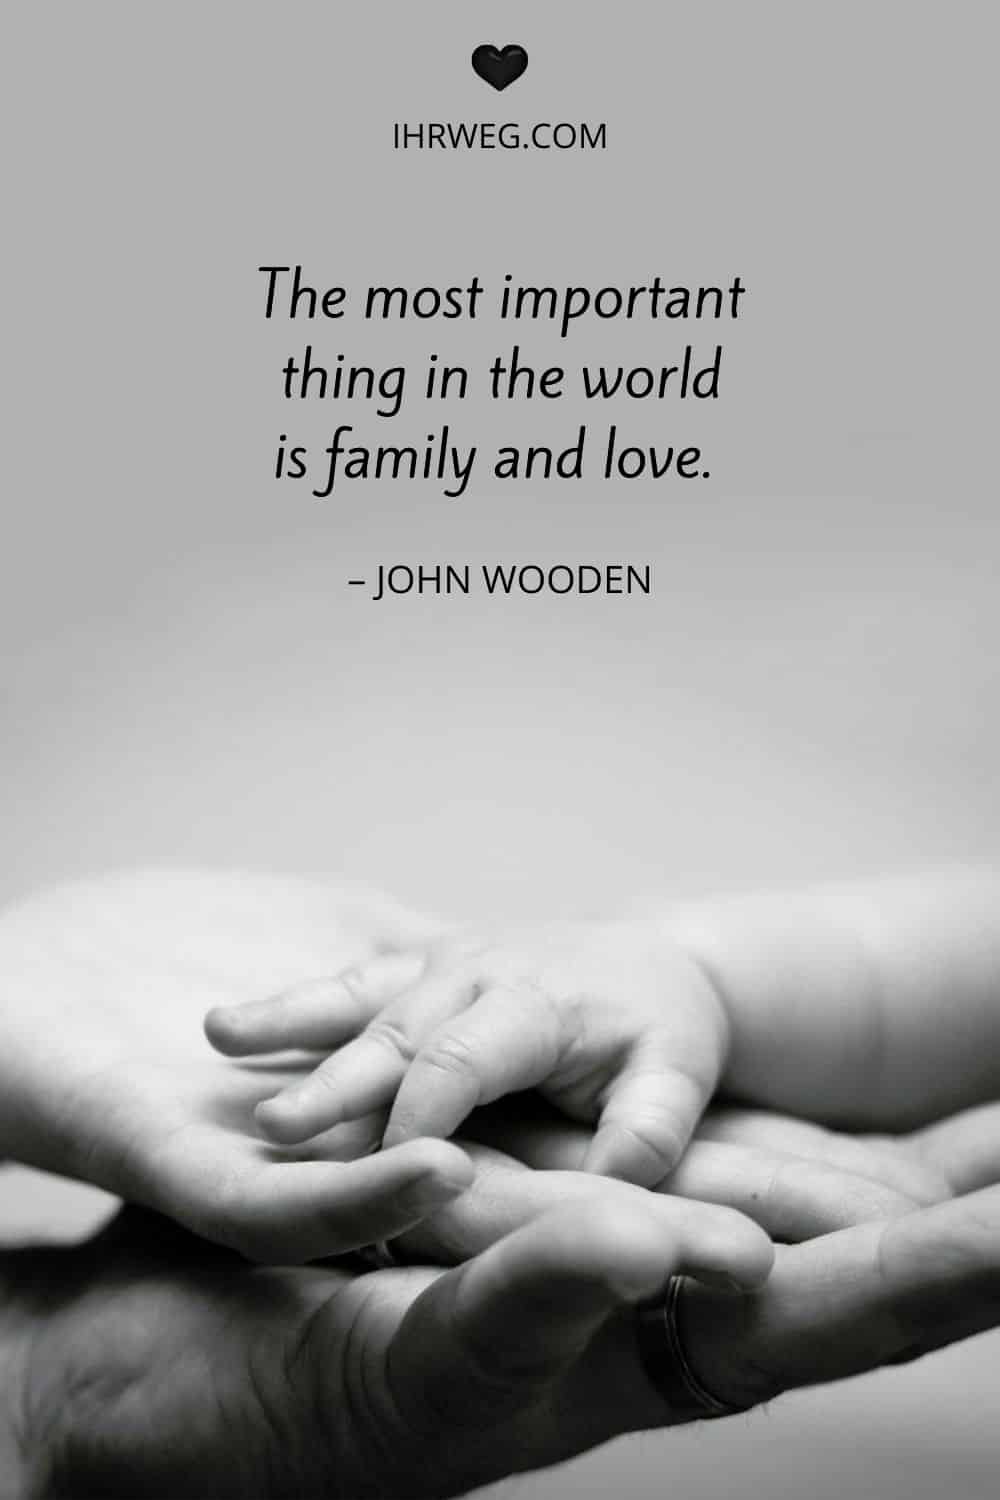 Zitat von John Wooden über die wichtigsten Dinge im Leben, Liebe und Familie